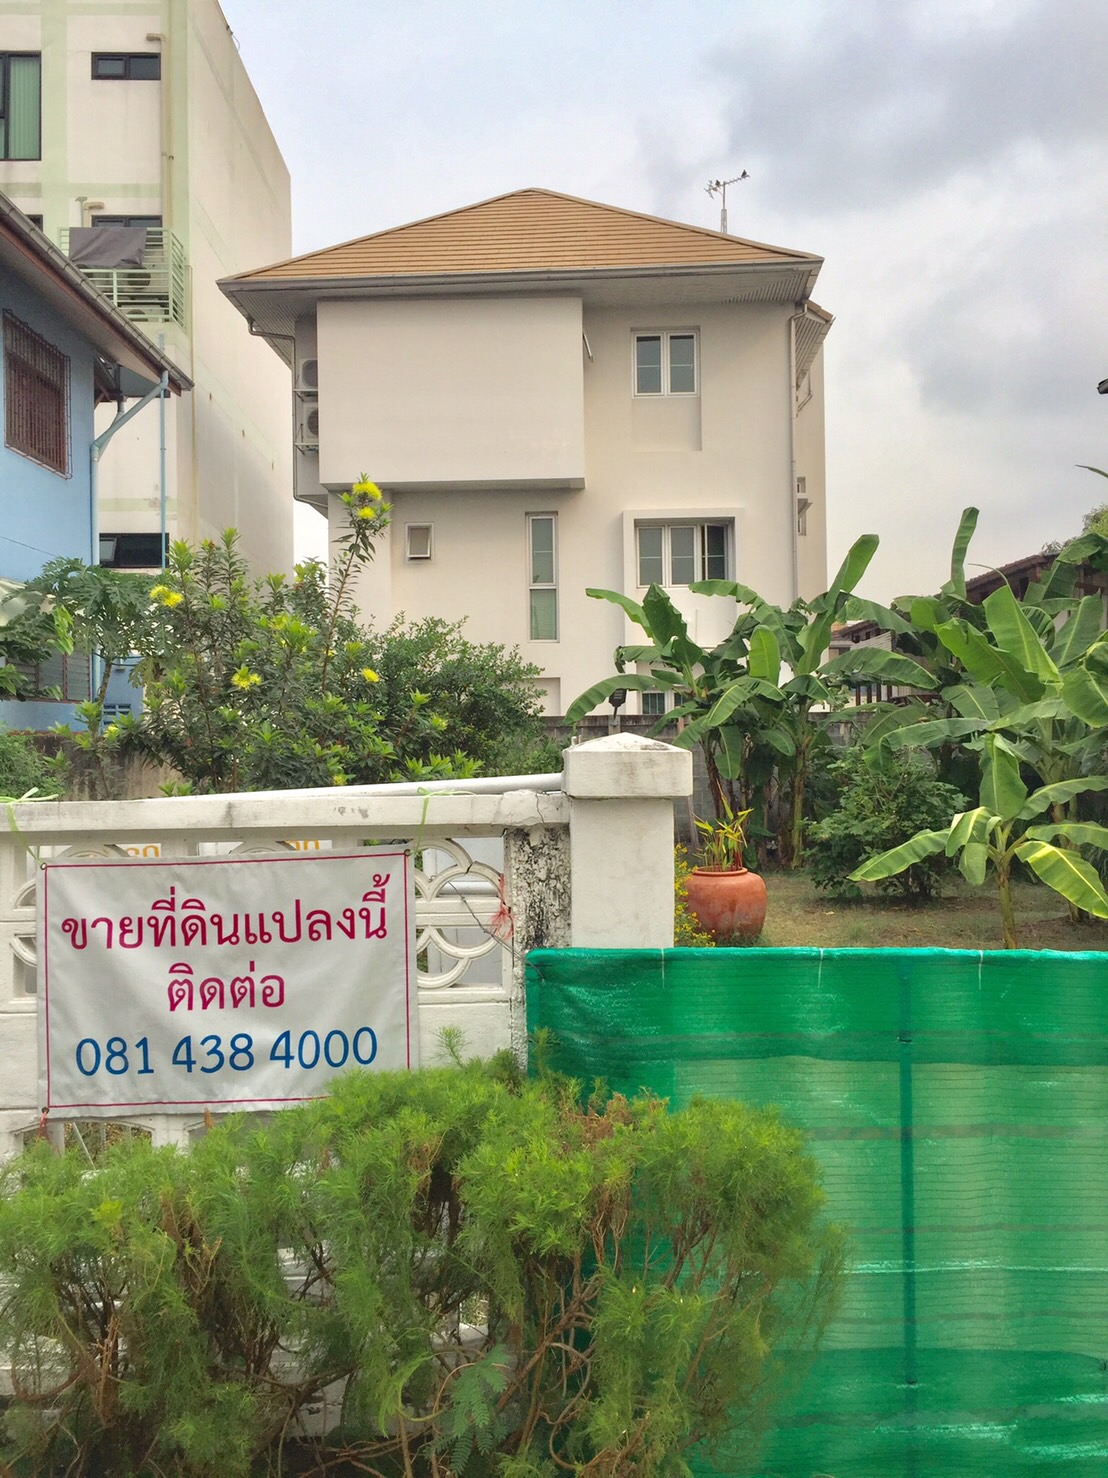 ขายที่ดินเปล่าพร้อมปลูกสร้าง ในหมู่บ้านซิเมนต์ไทย